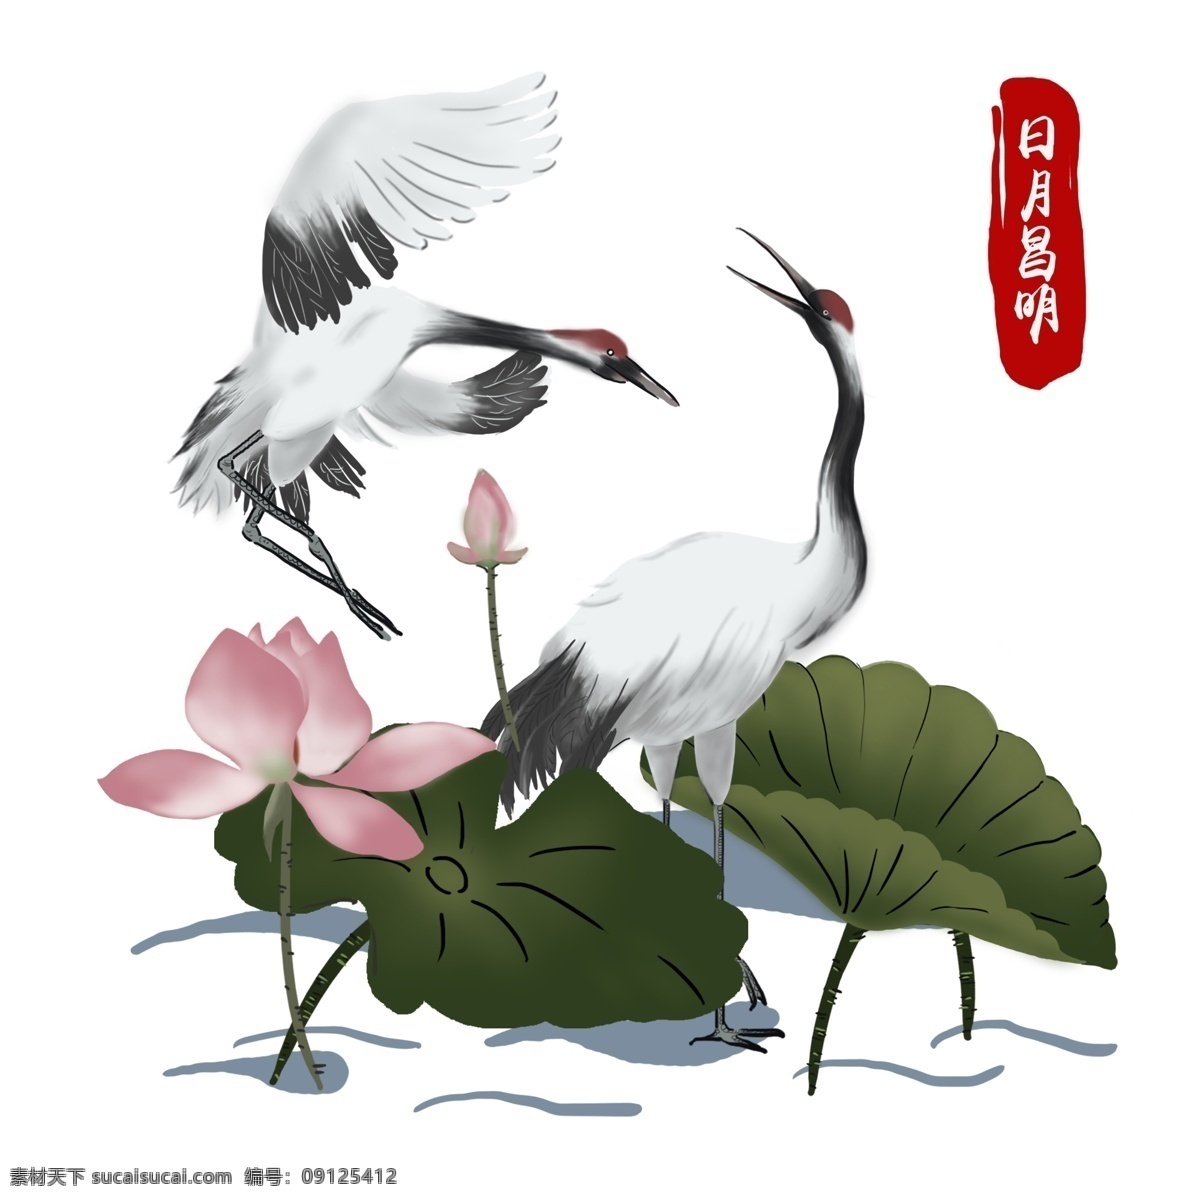 手绘 简约 中国 风 戏水 仙鹤 商用 元素 中国风 荷花 荷叶 丹顶鹤 祝福 池塘